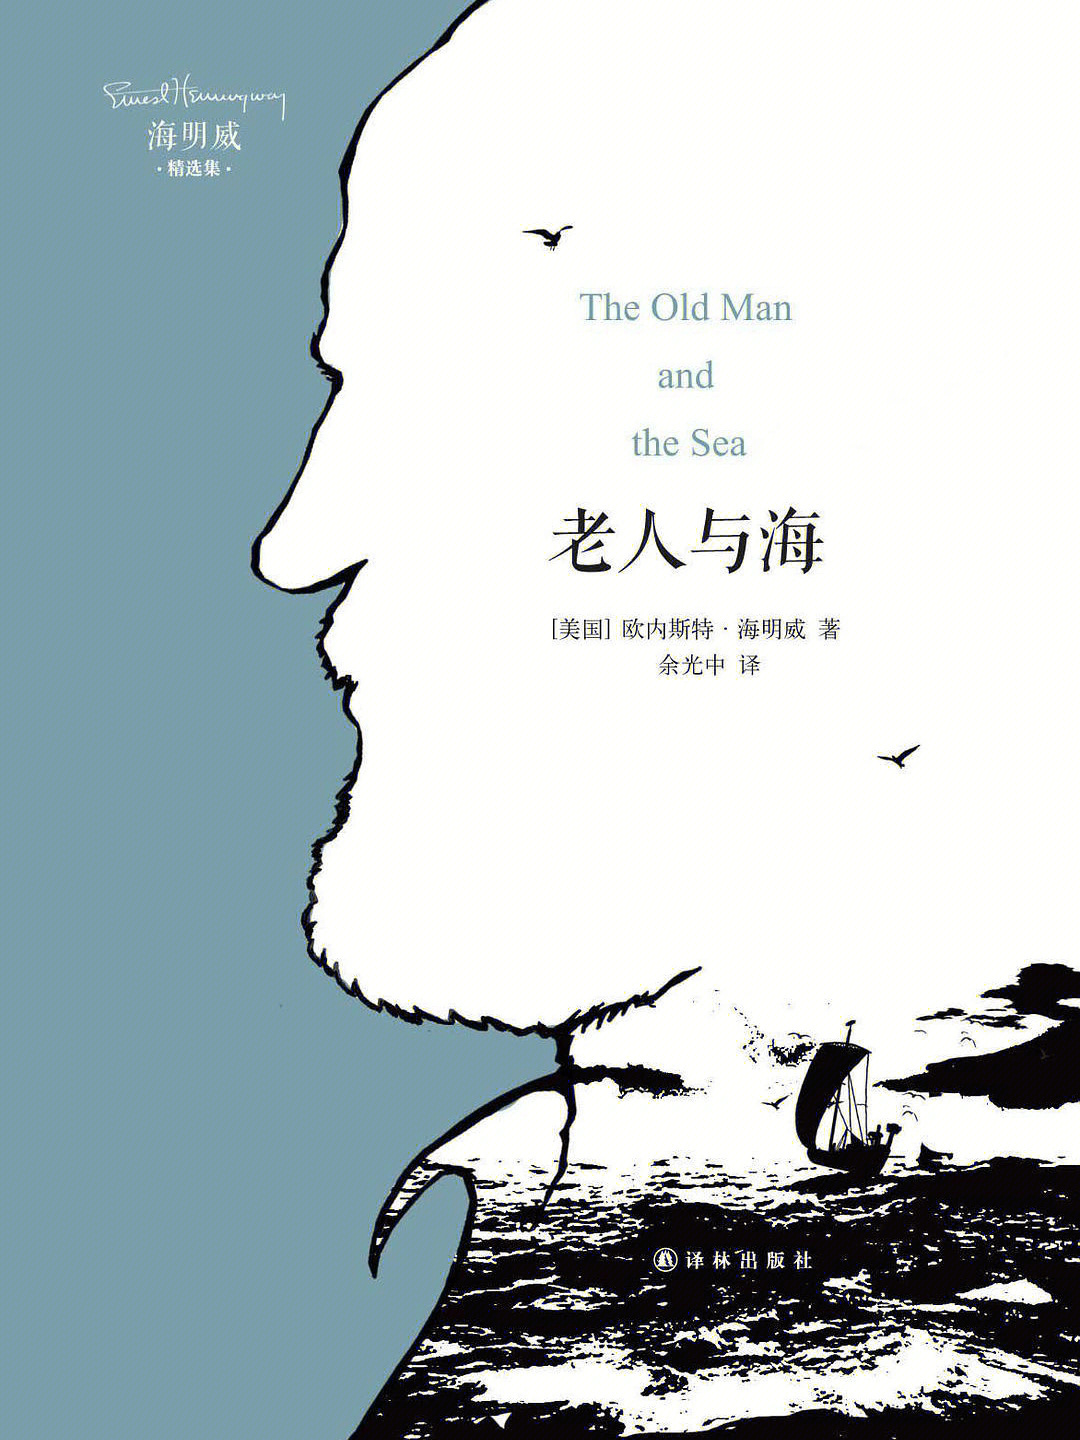 三个年龄视角看《老人与海》,现在终于读懂了海明威